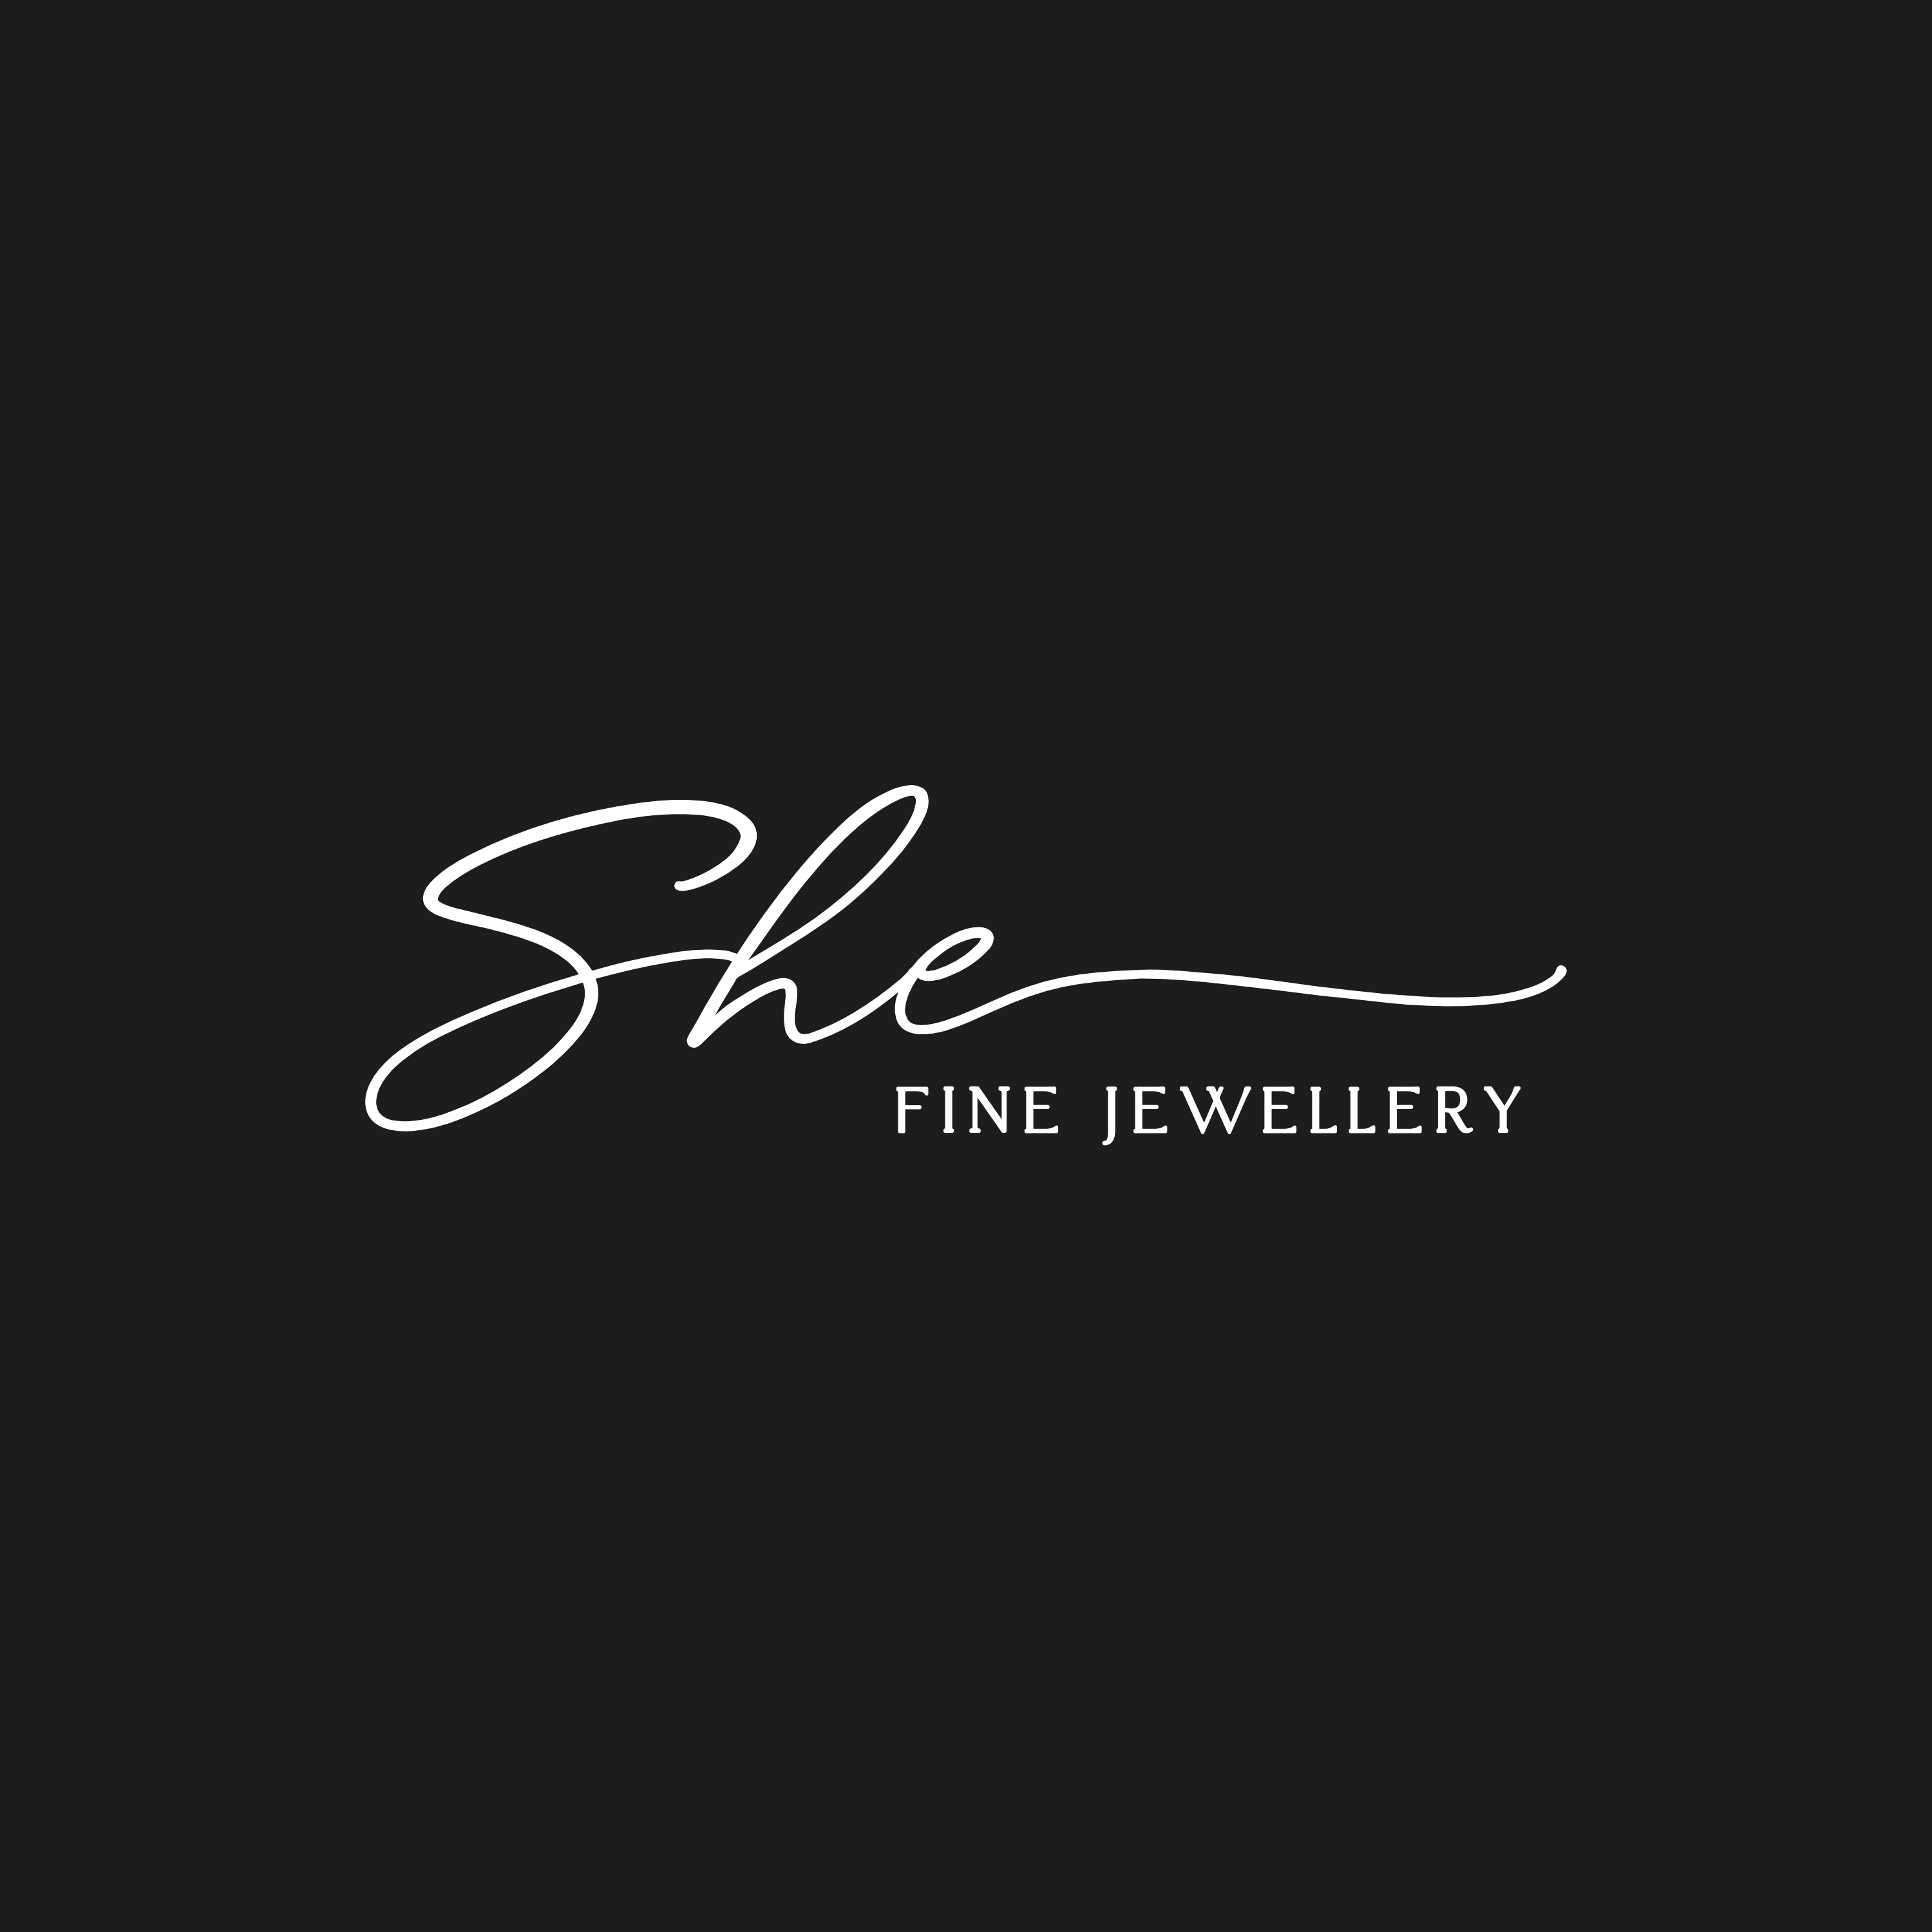 She Fine Jewellery